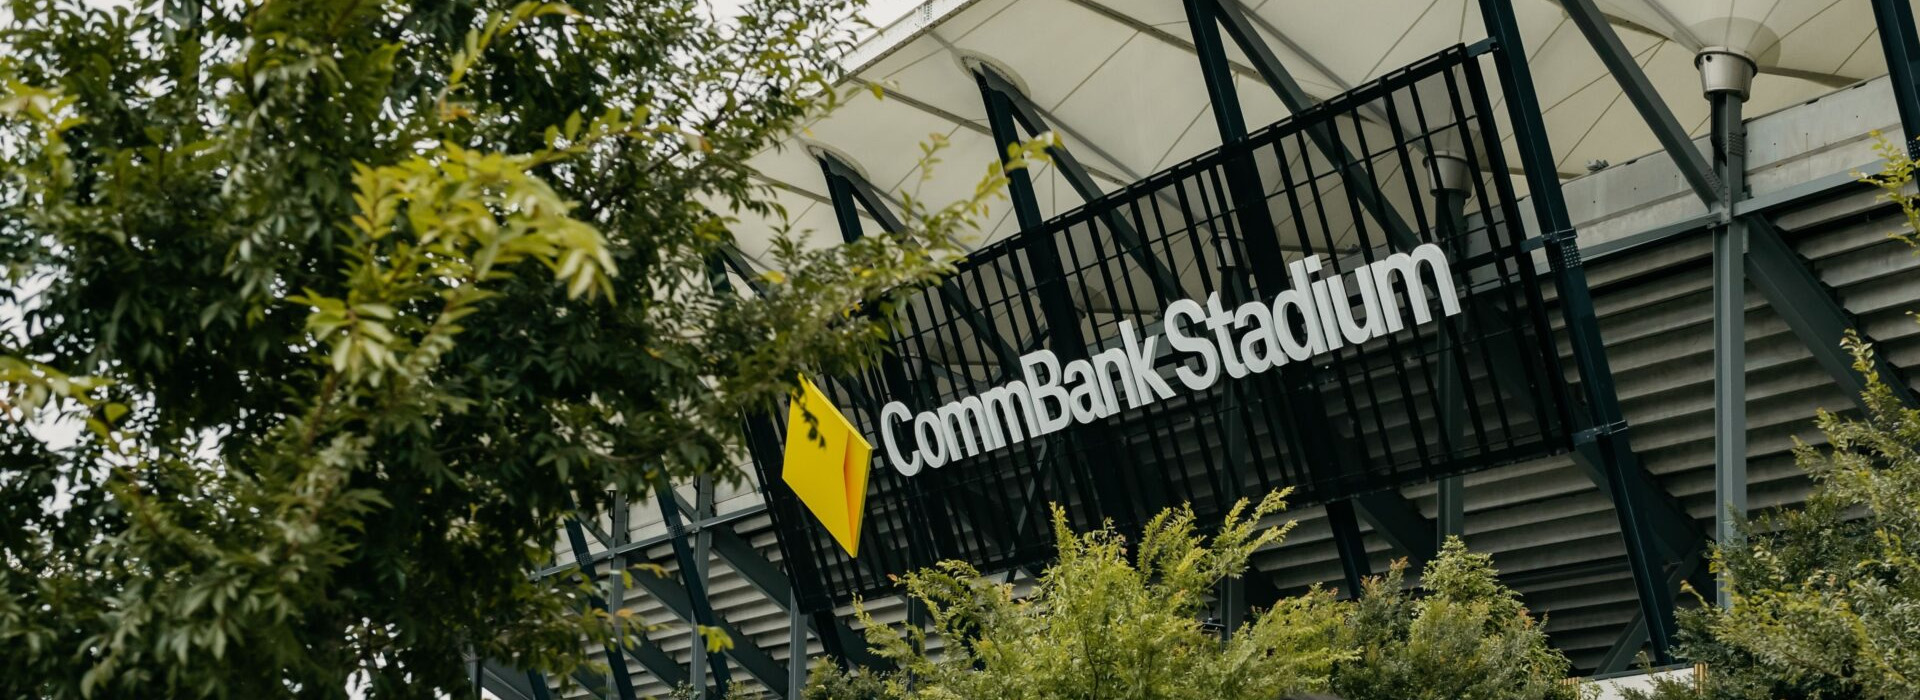 CommBank Stadium Parramatta